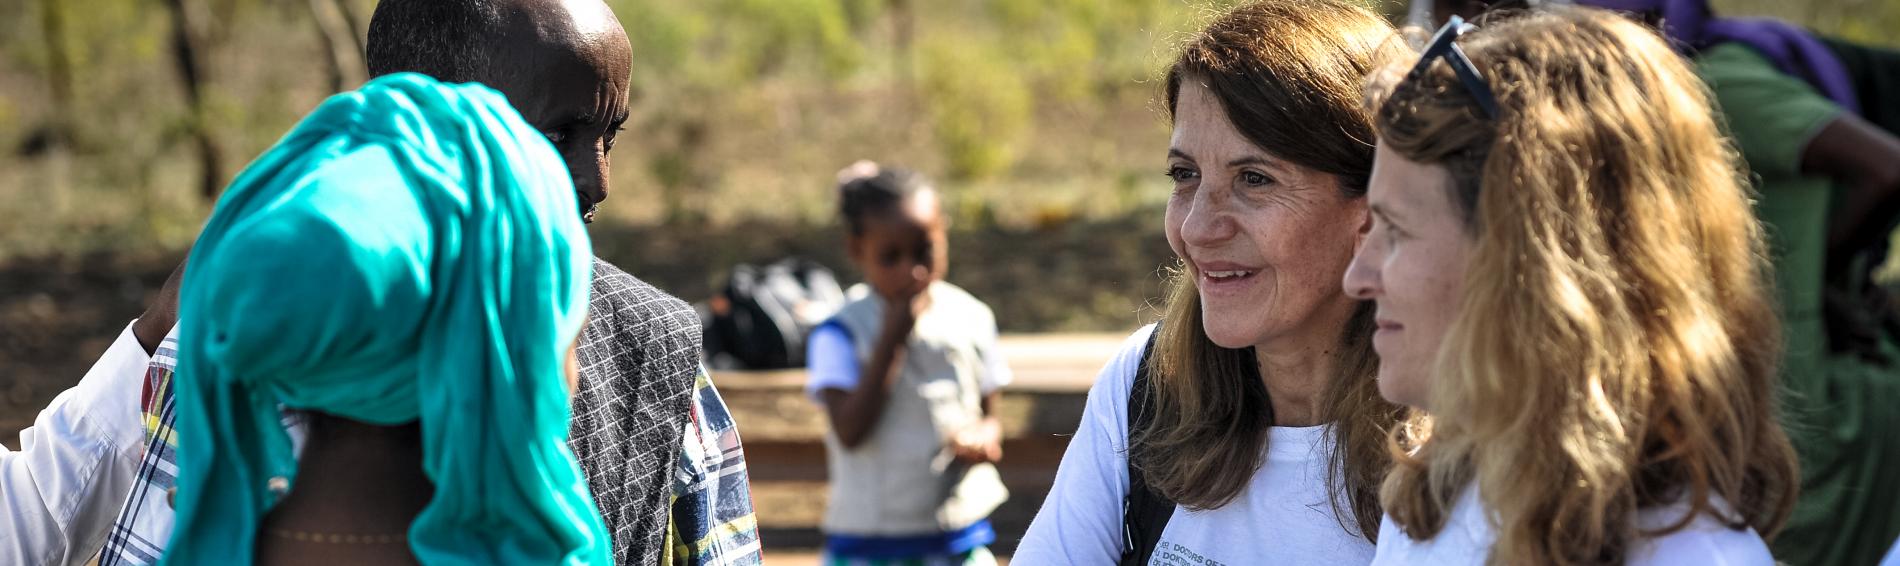 Françoise Sivignon mit Kooperationspartner während einer Projektreise in Äthiopien.